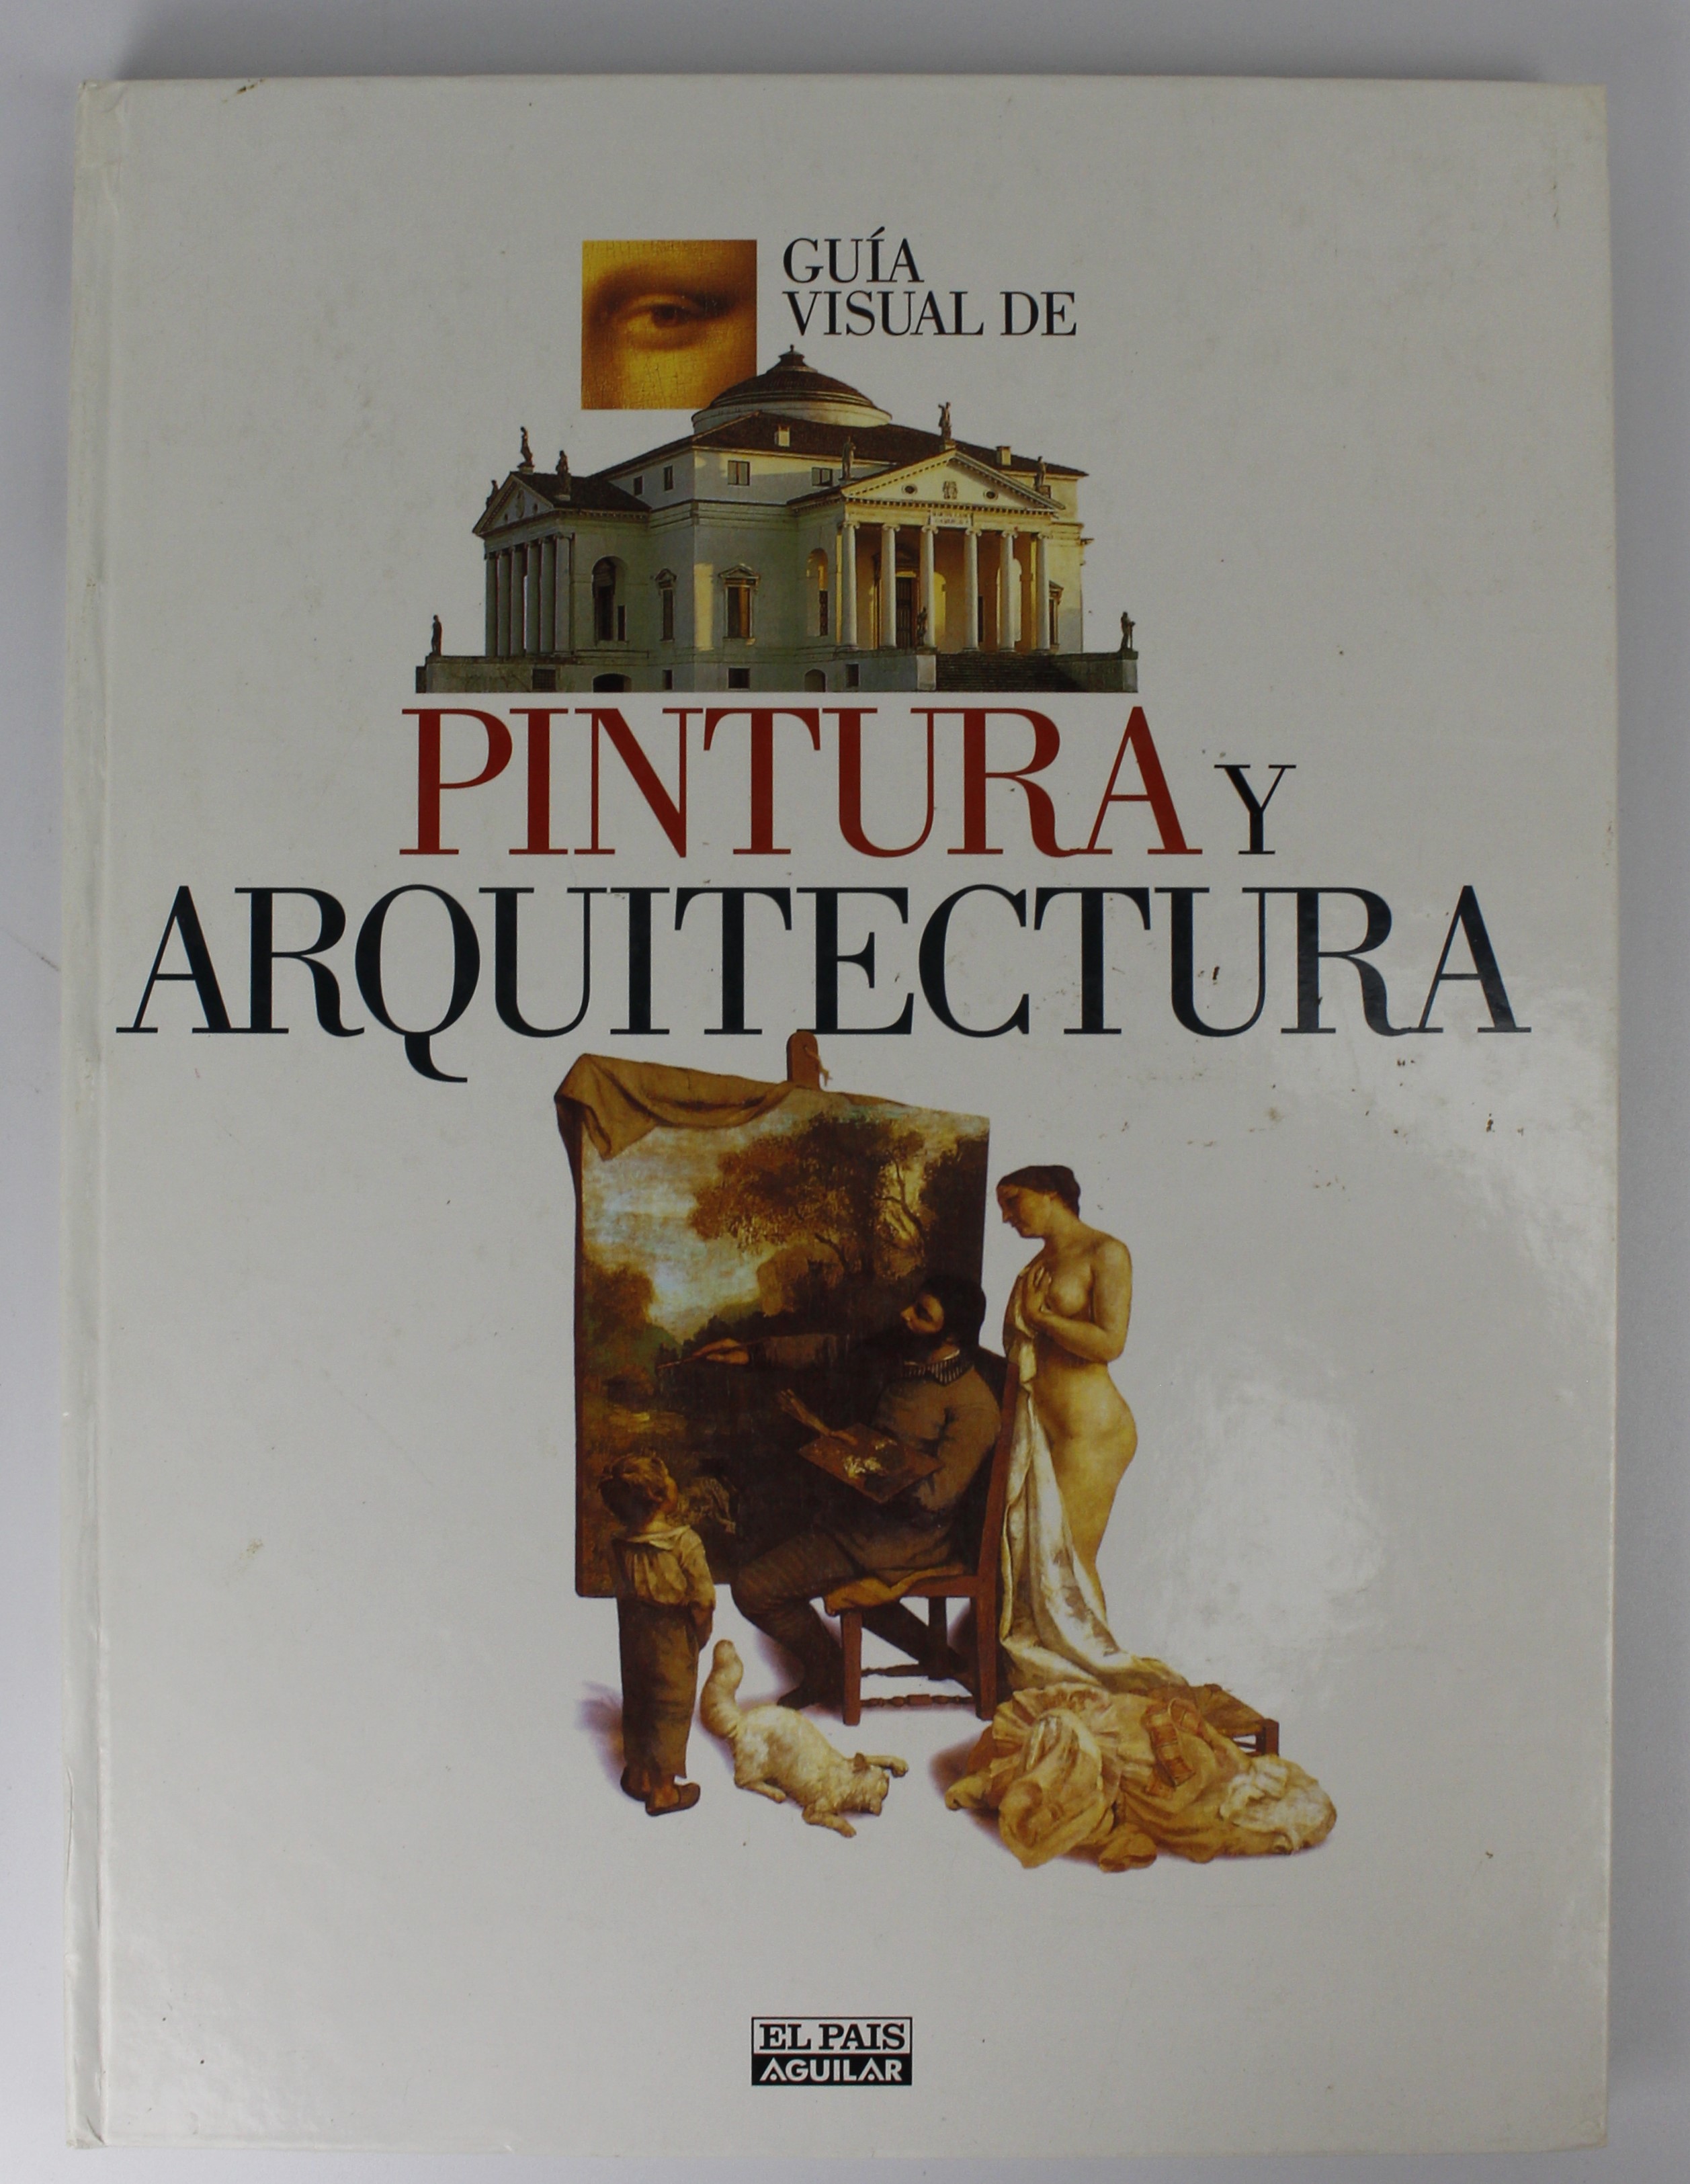 "GUIA VISUAL DE PINTURA Y ARQUITECTURA"